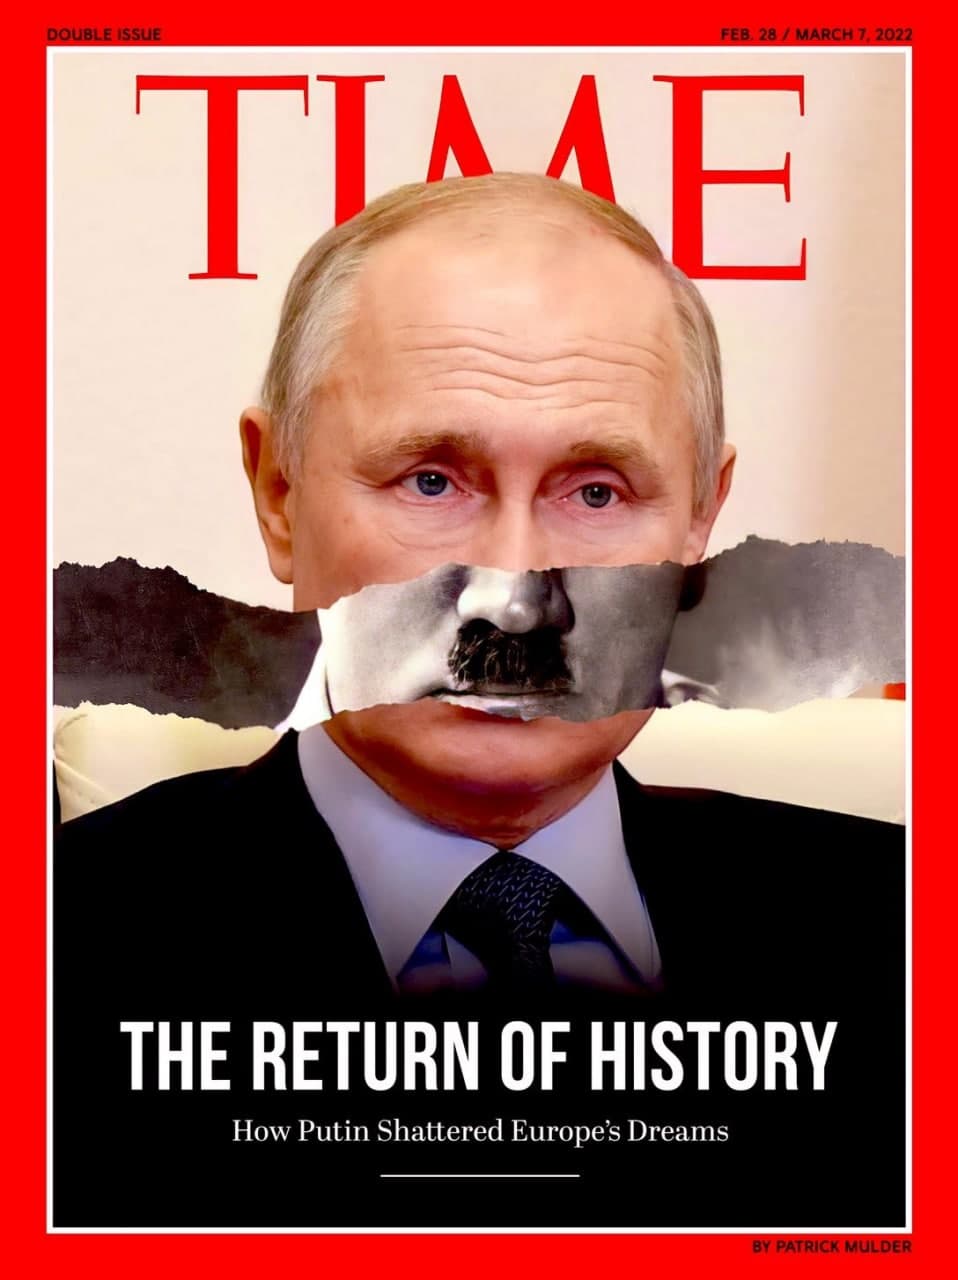 Vladimir Putin e la “reductio ad Hitlerum” – Claudio Antonelli (Montréal)